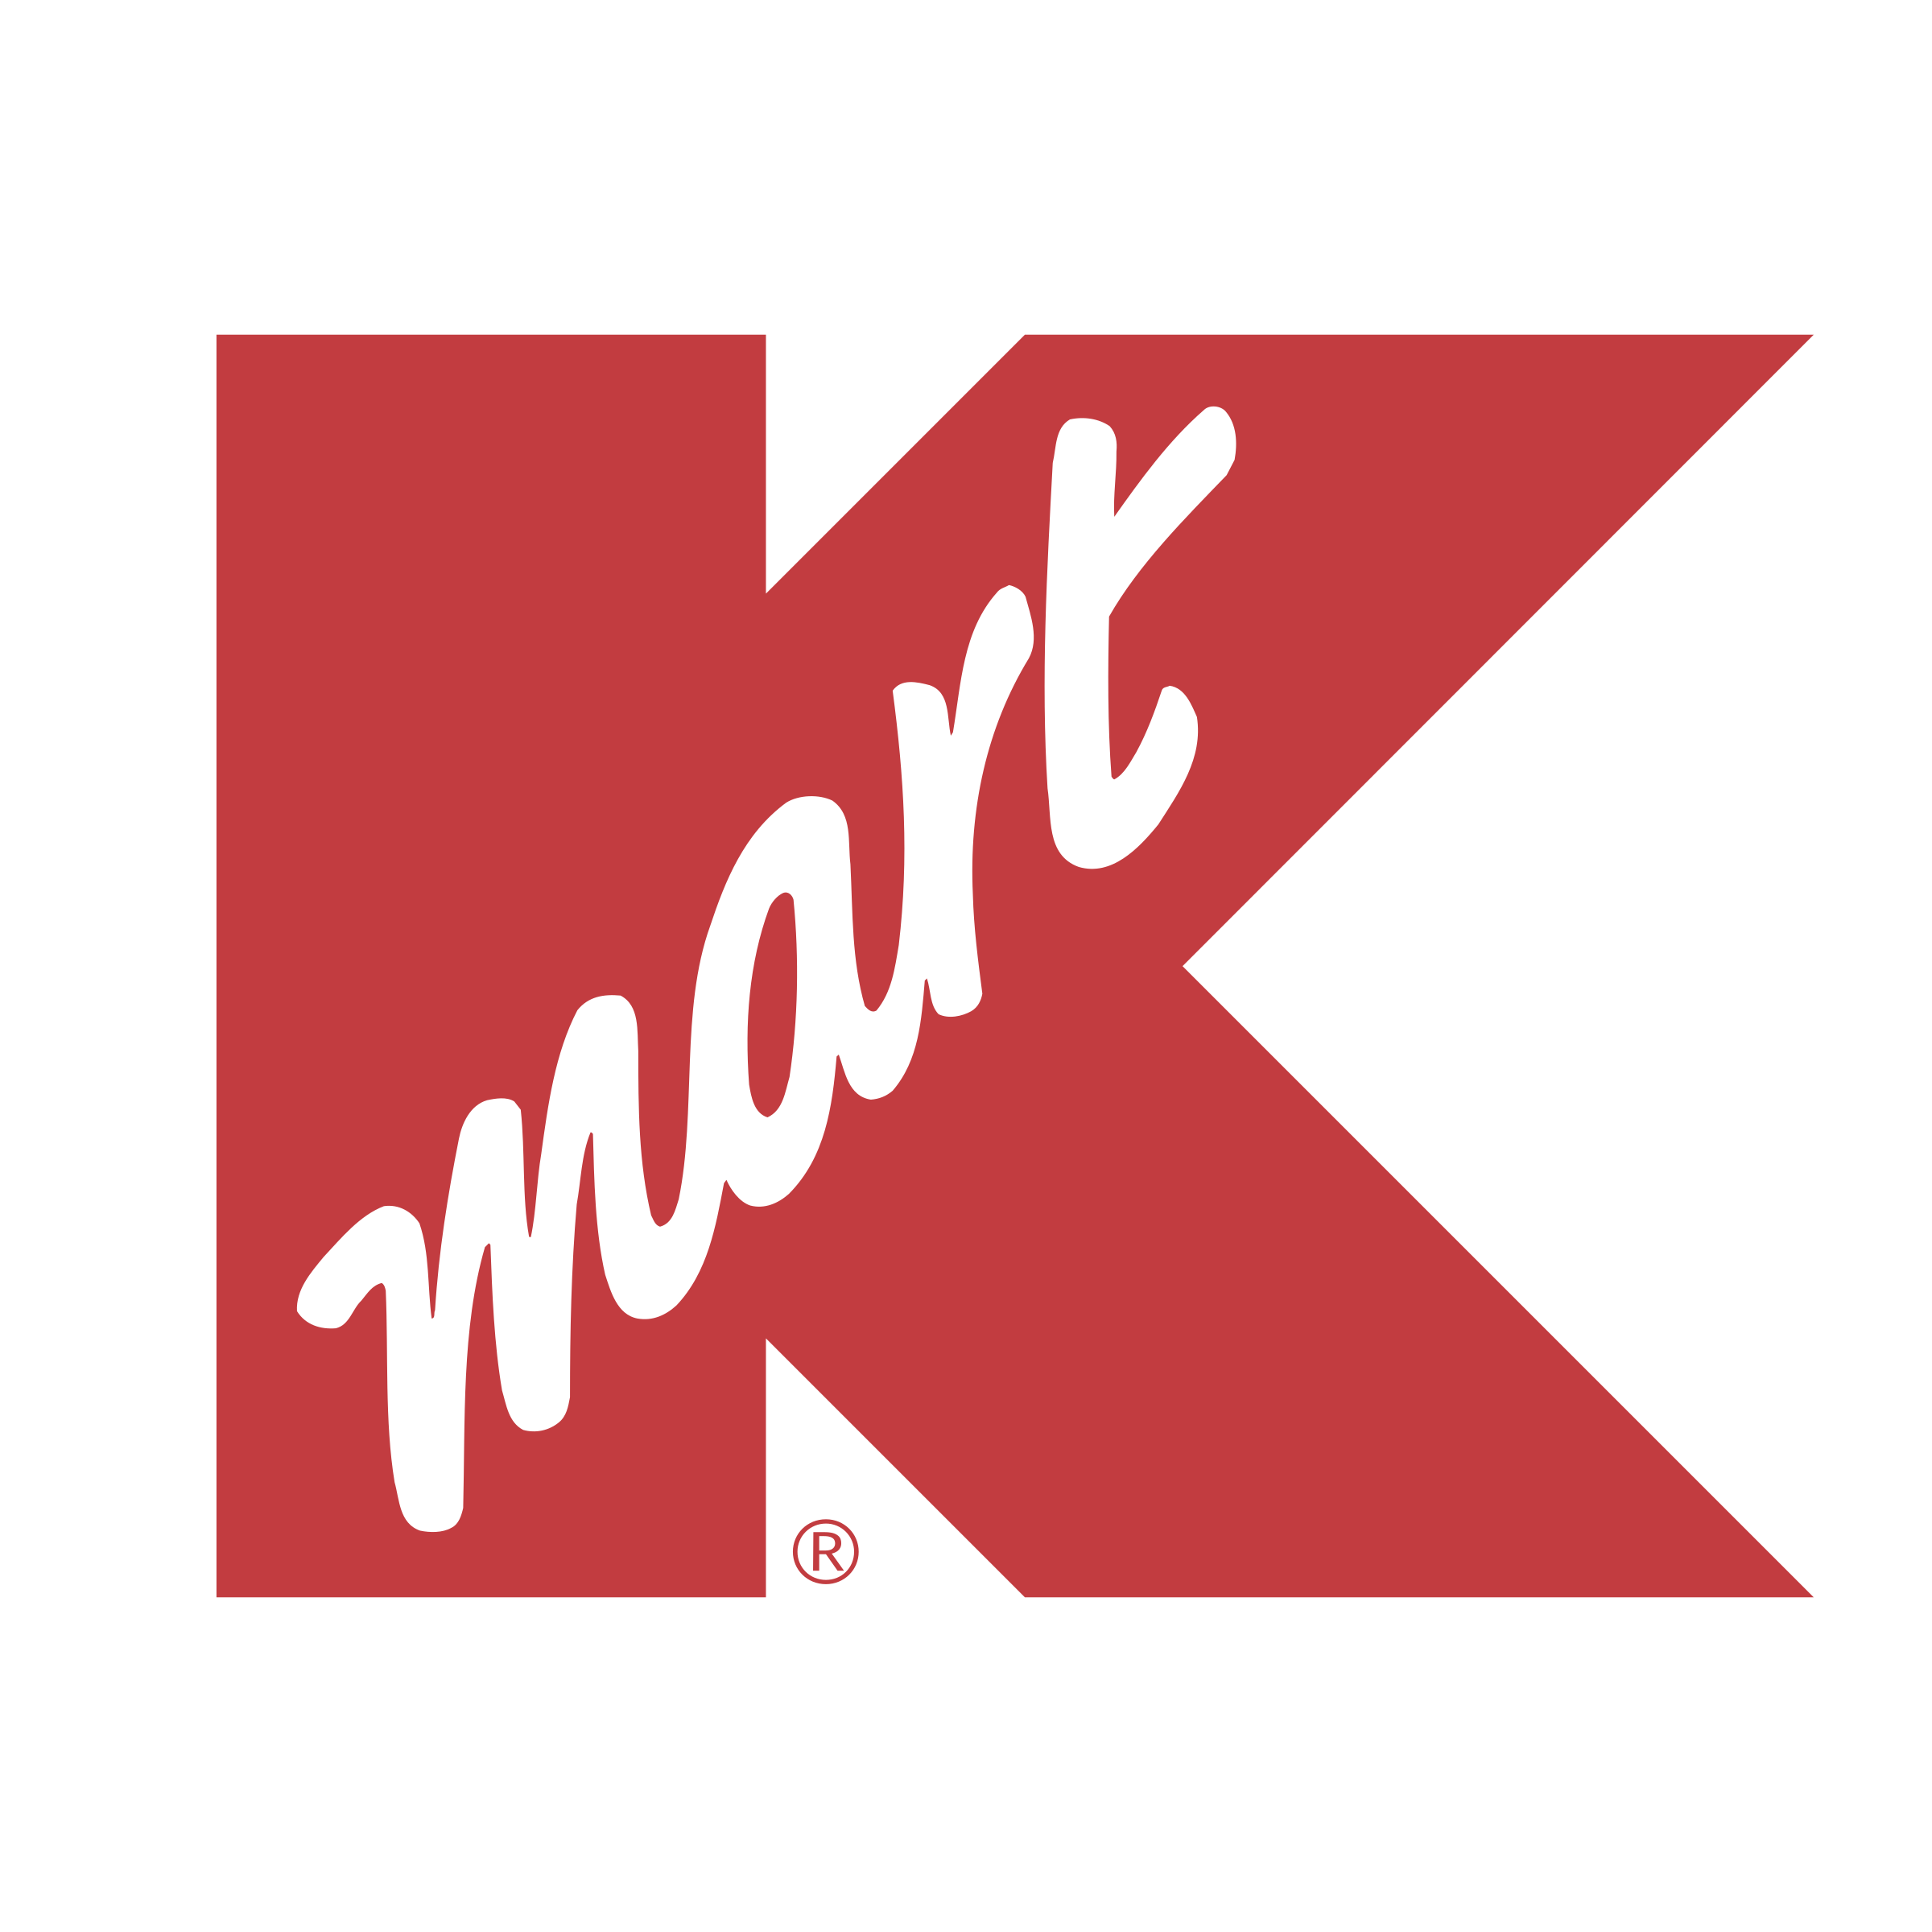 Kmart 1990s logo.png